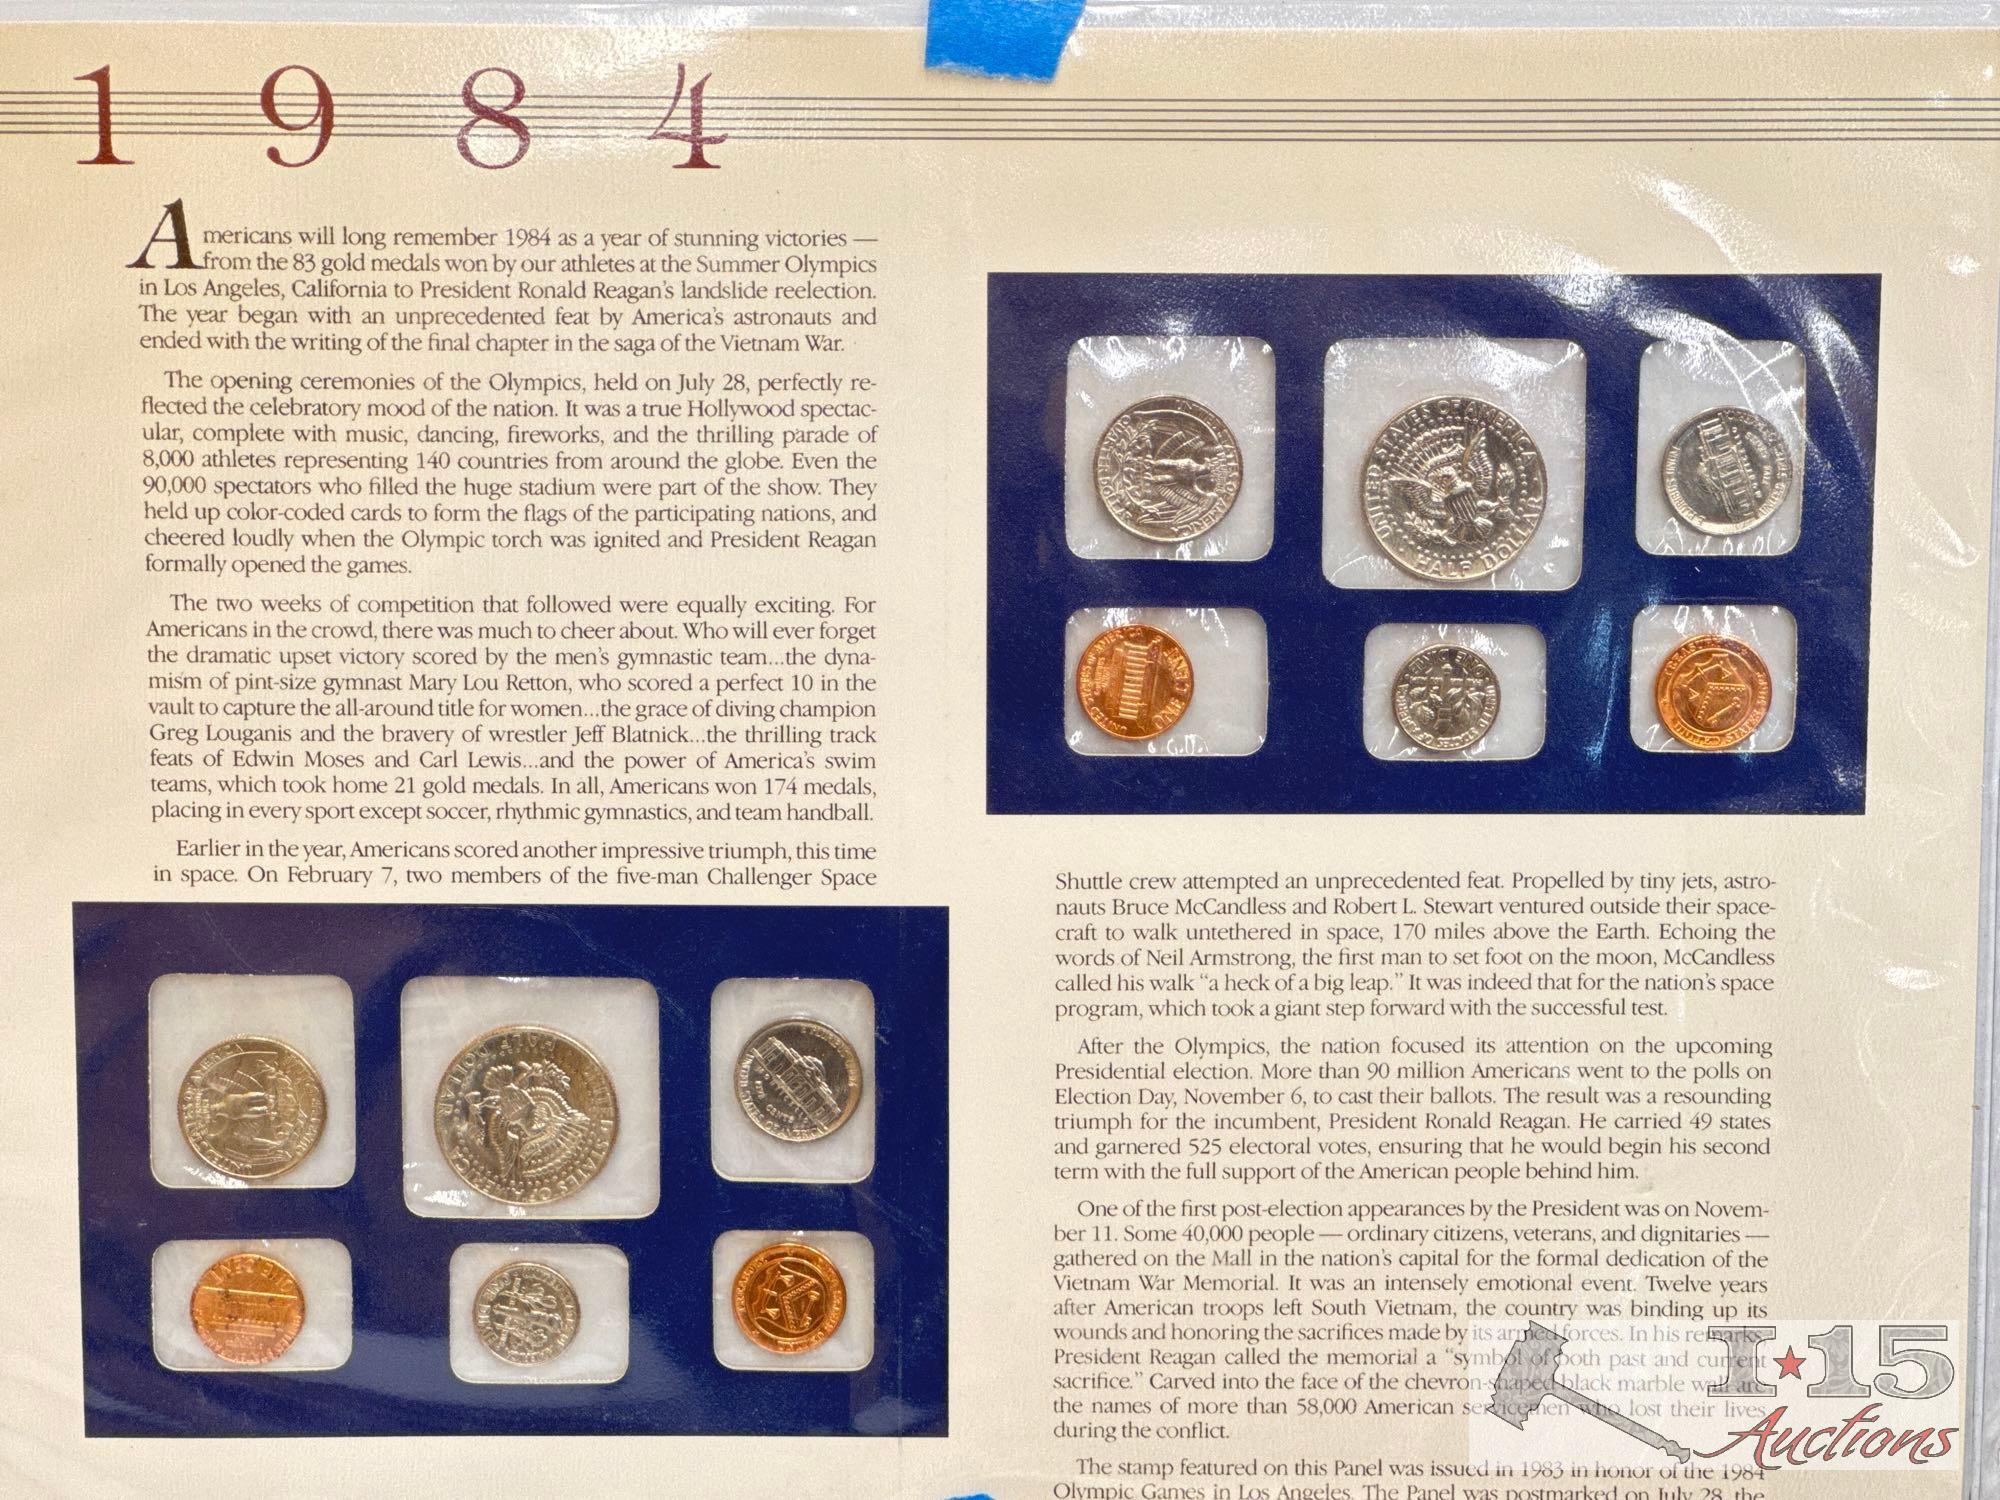 1984-1986 U.S. Mint Sets